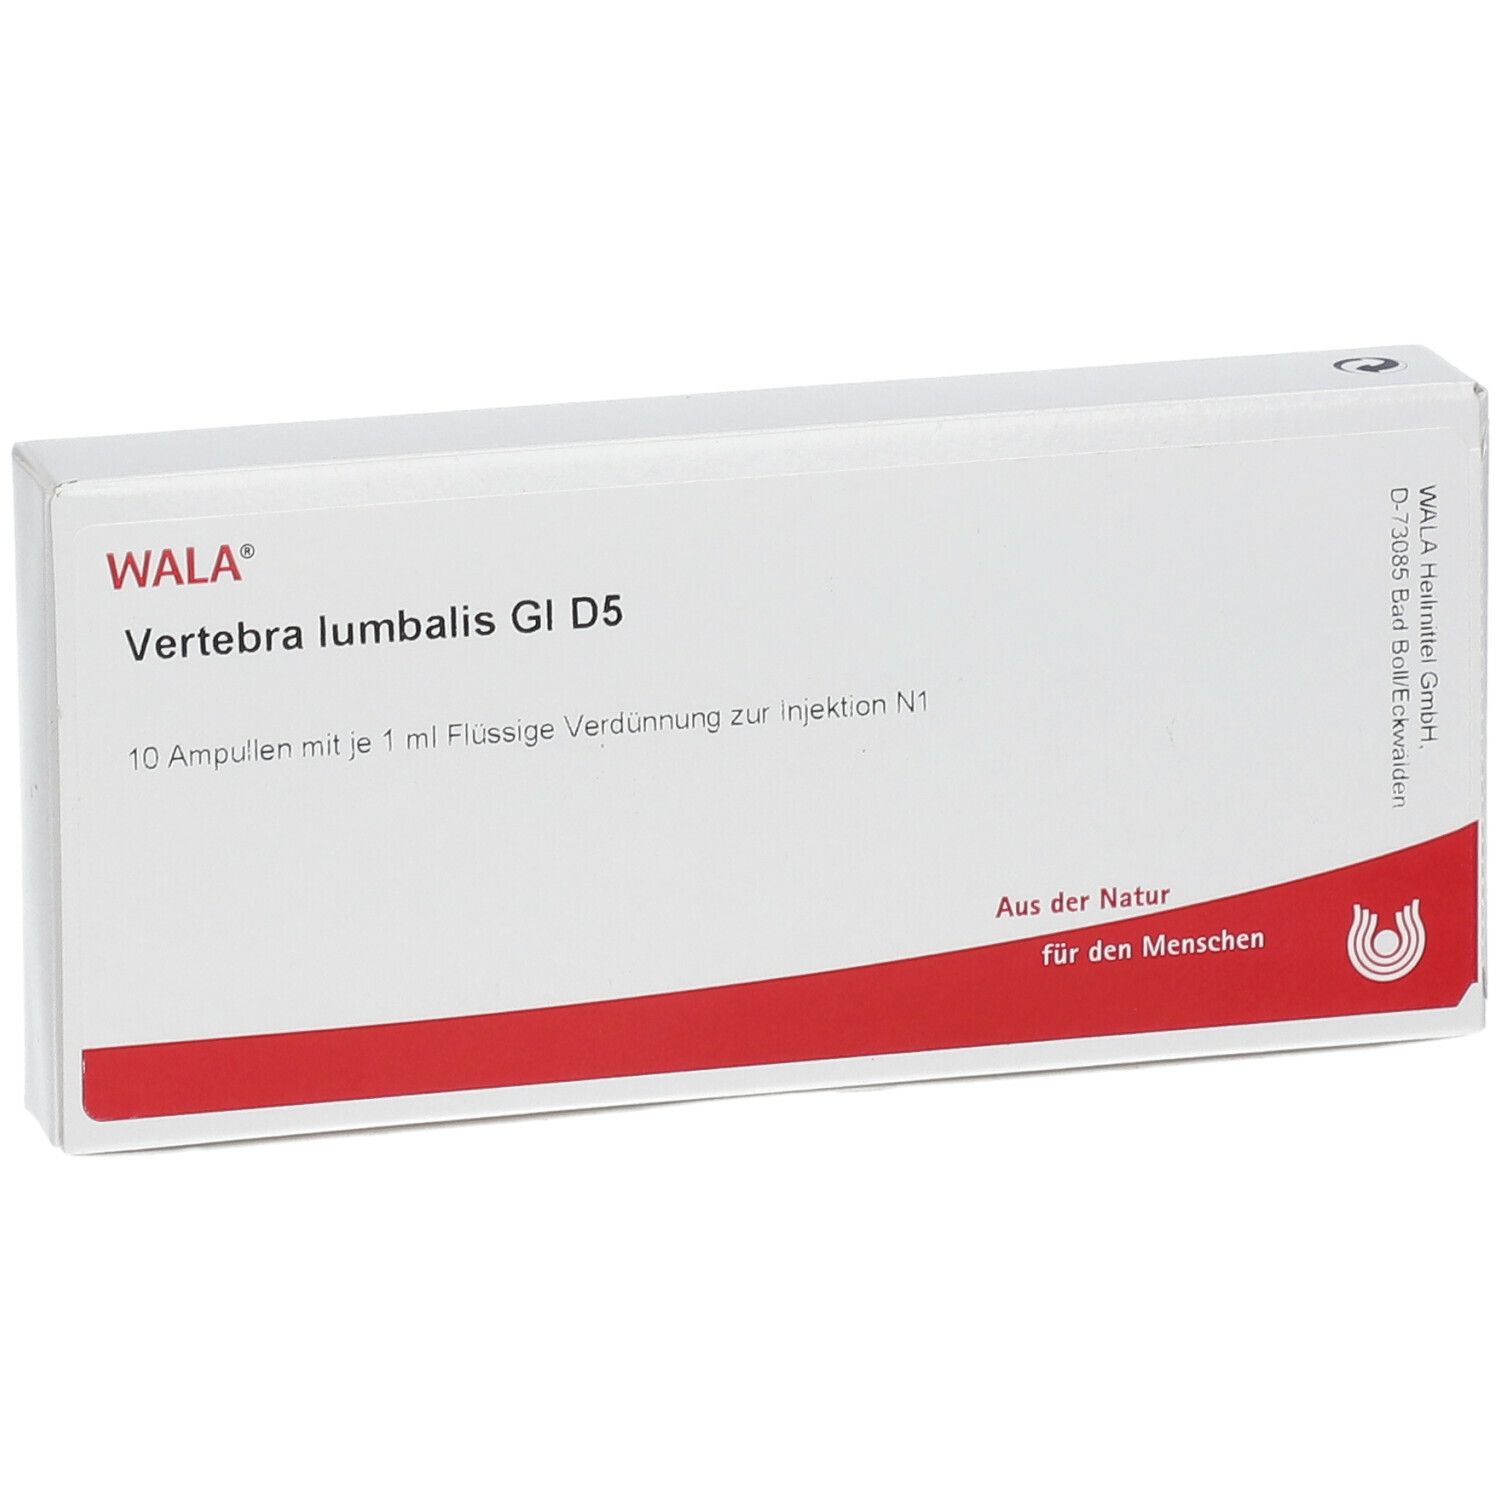 WALA® Vertebra lumbalis Gl D 5